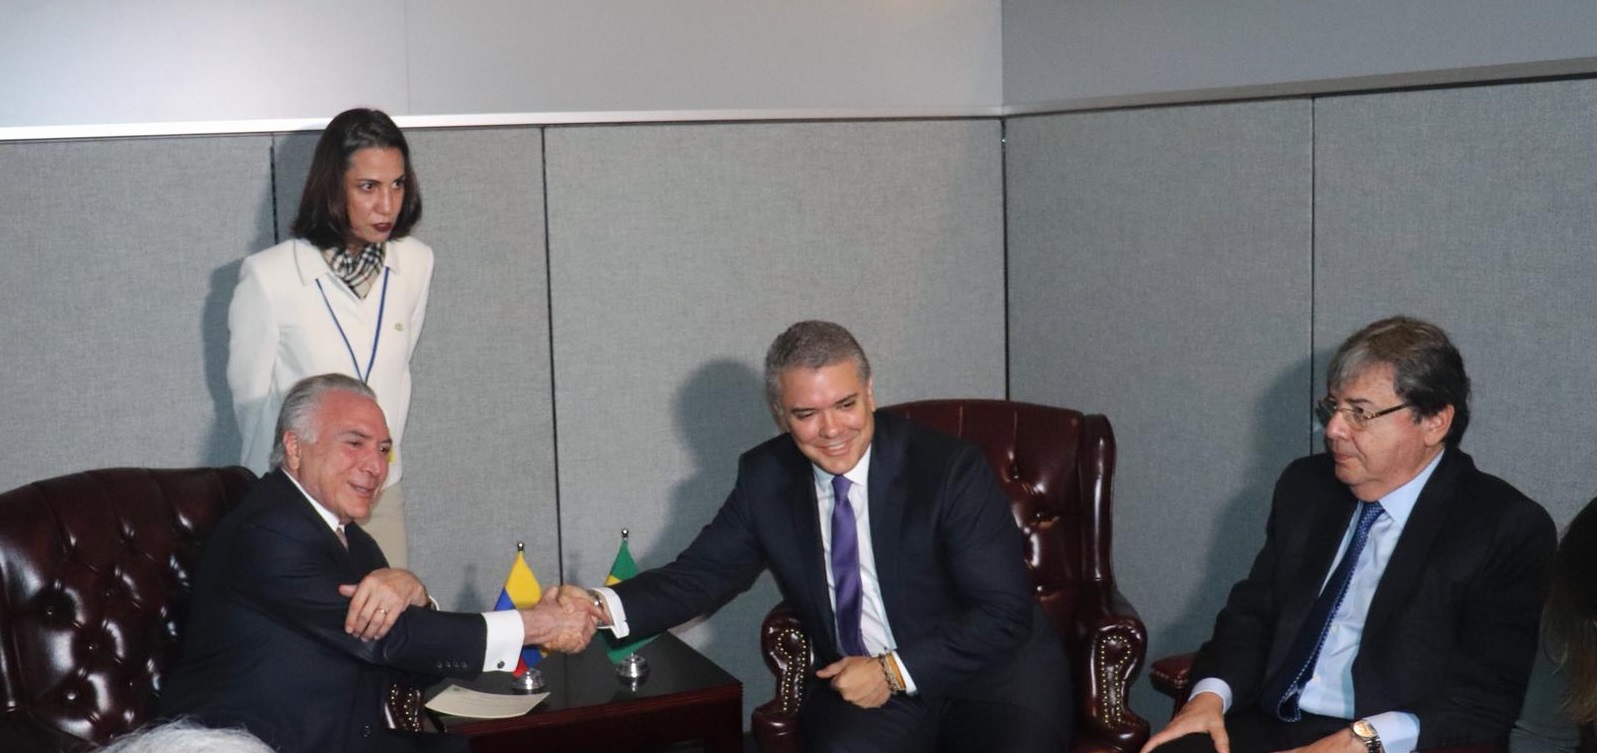 El Presidente Duque sostuvo reunión bilateral con el Presidente de Brasil. Canciller Carlos Holmes Trujillo estuvo presente en el encuentro